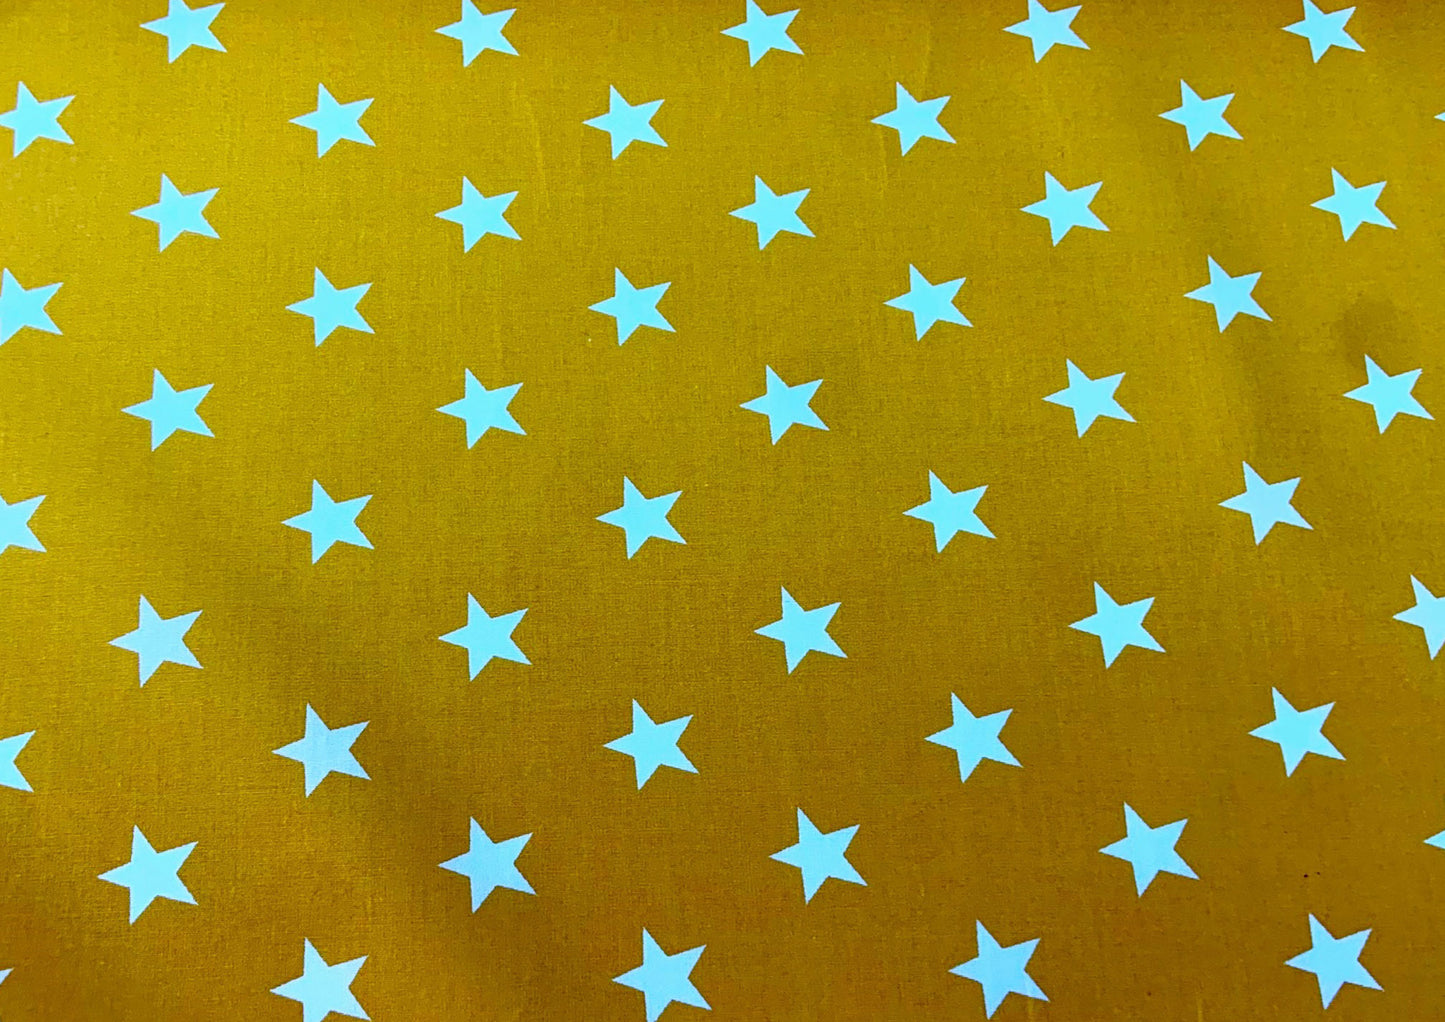 White stars on yellow cotton print